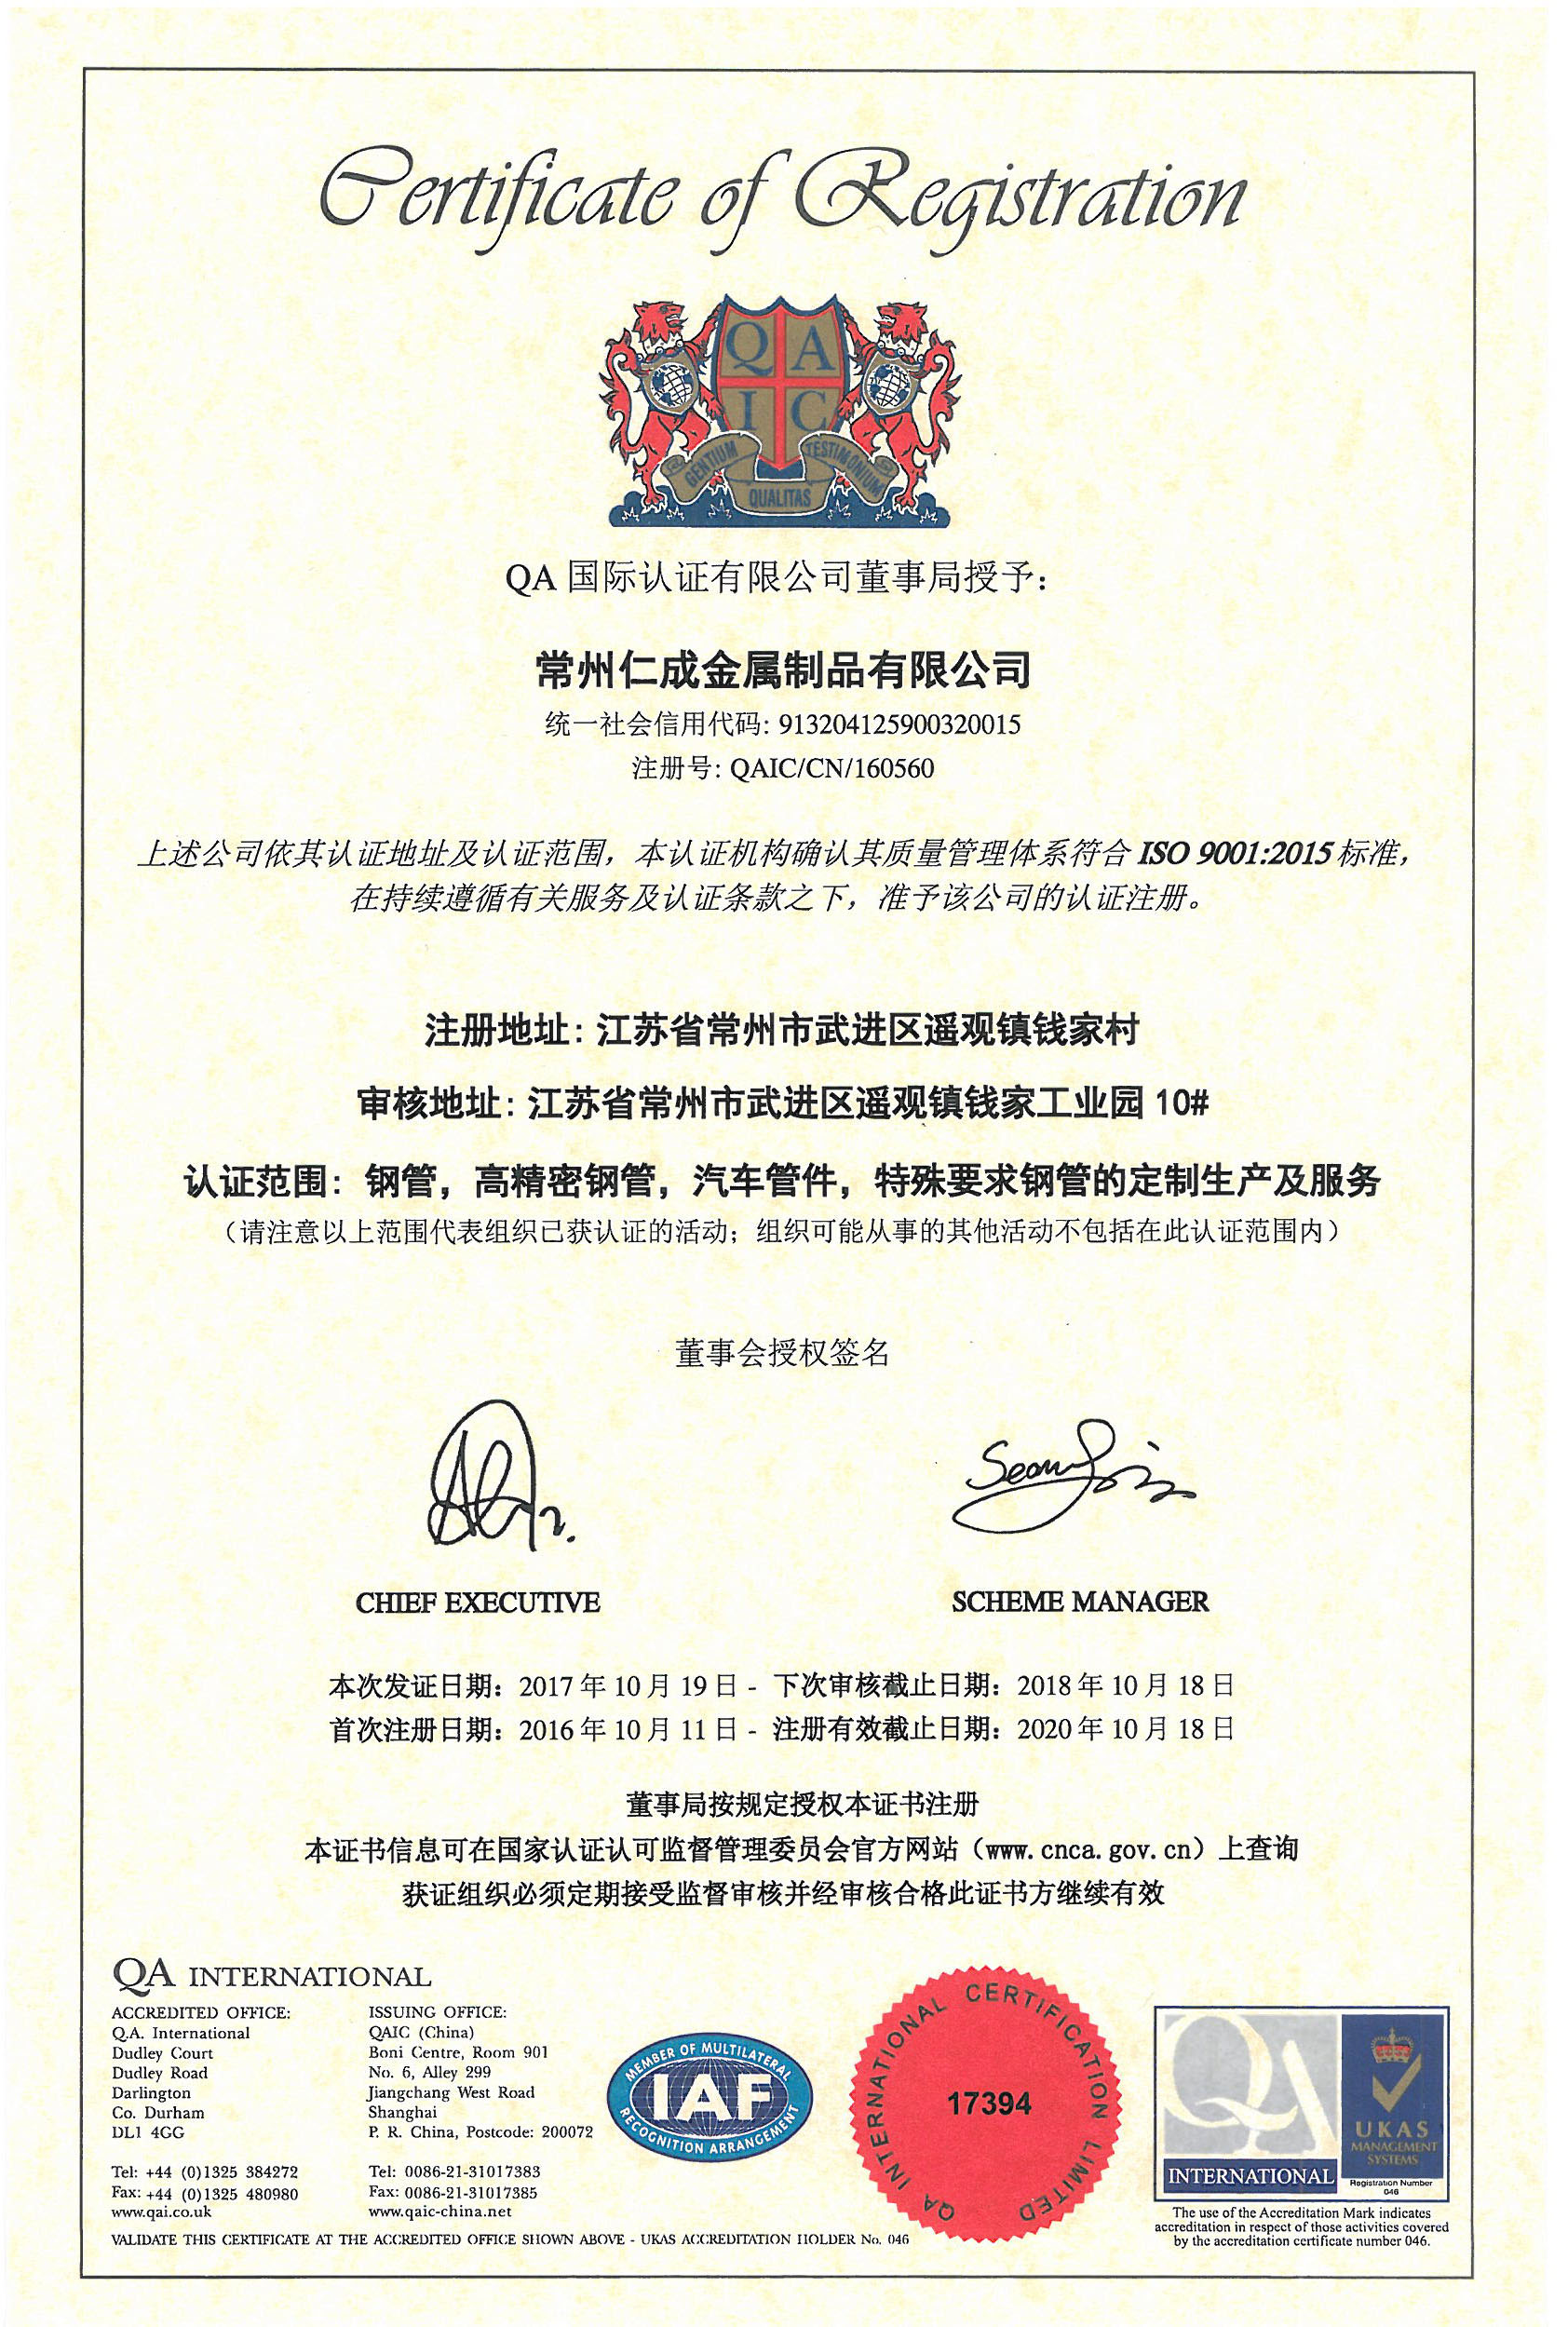 仁成金属制品通过ISO9001:2015认证